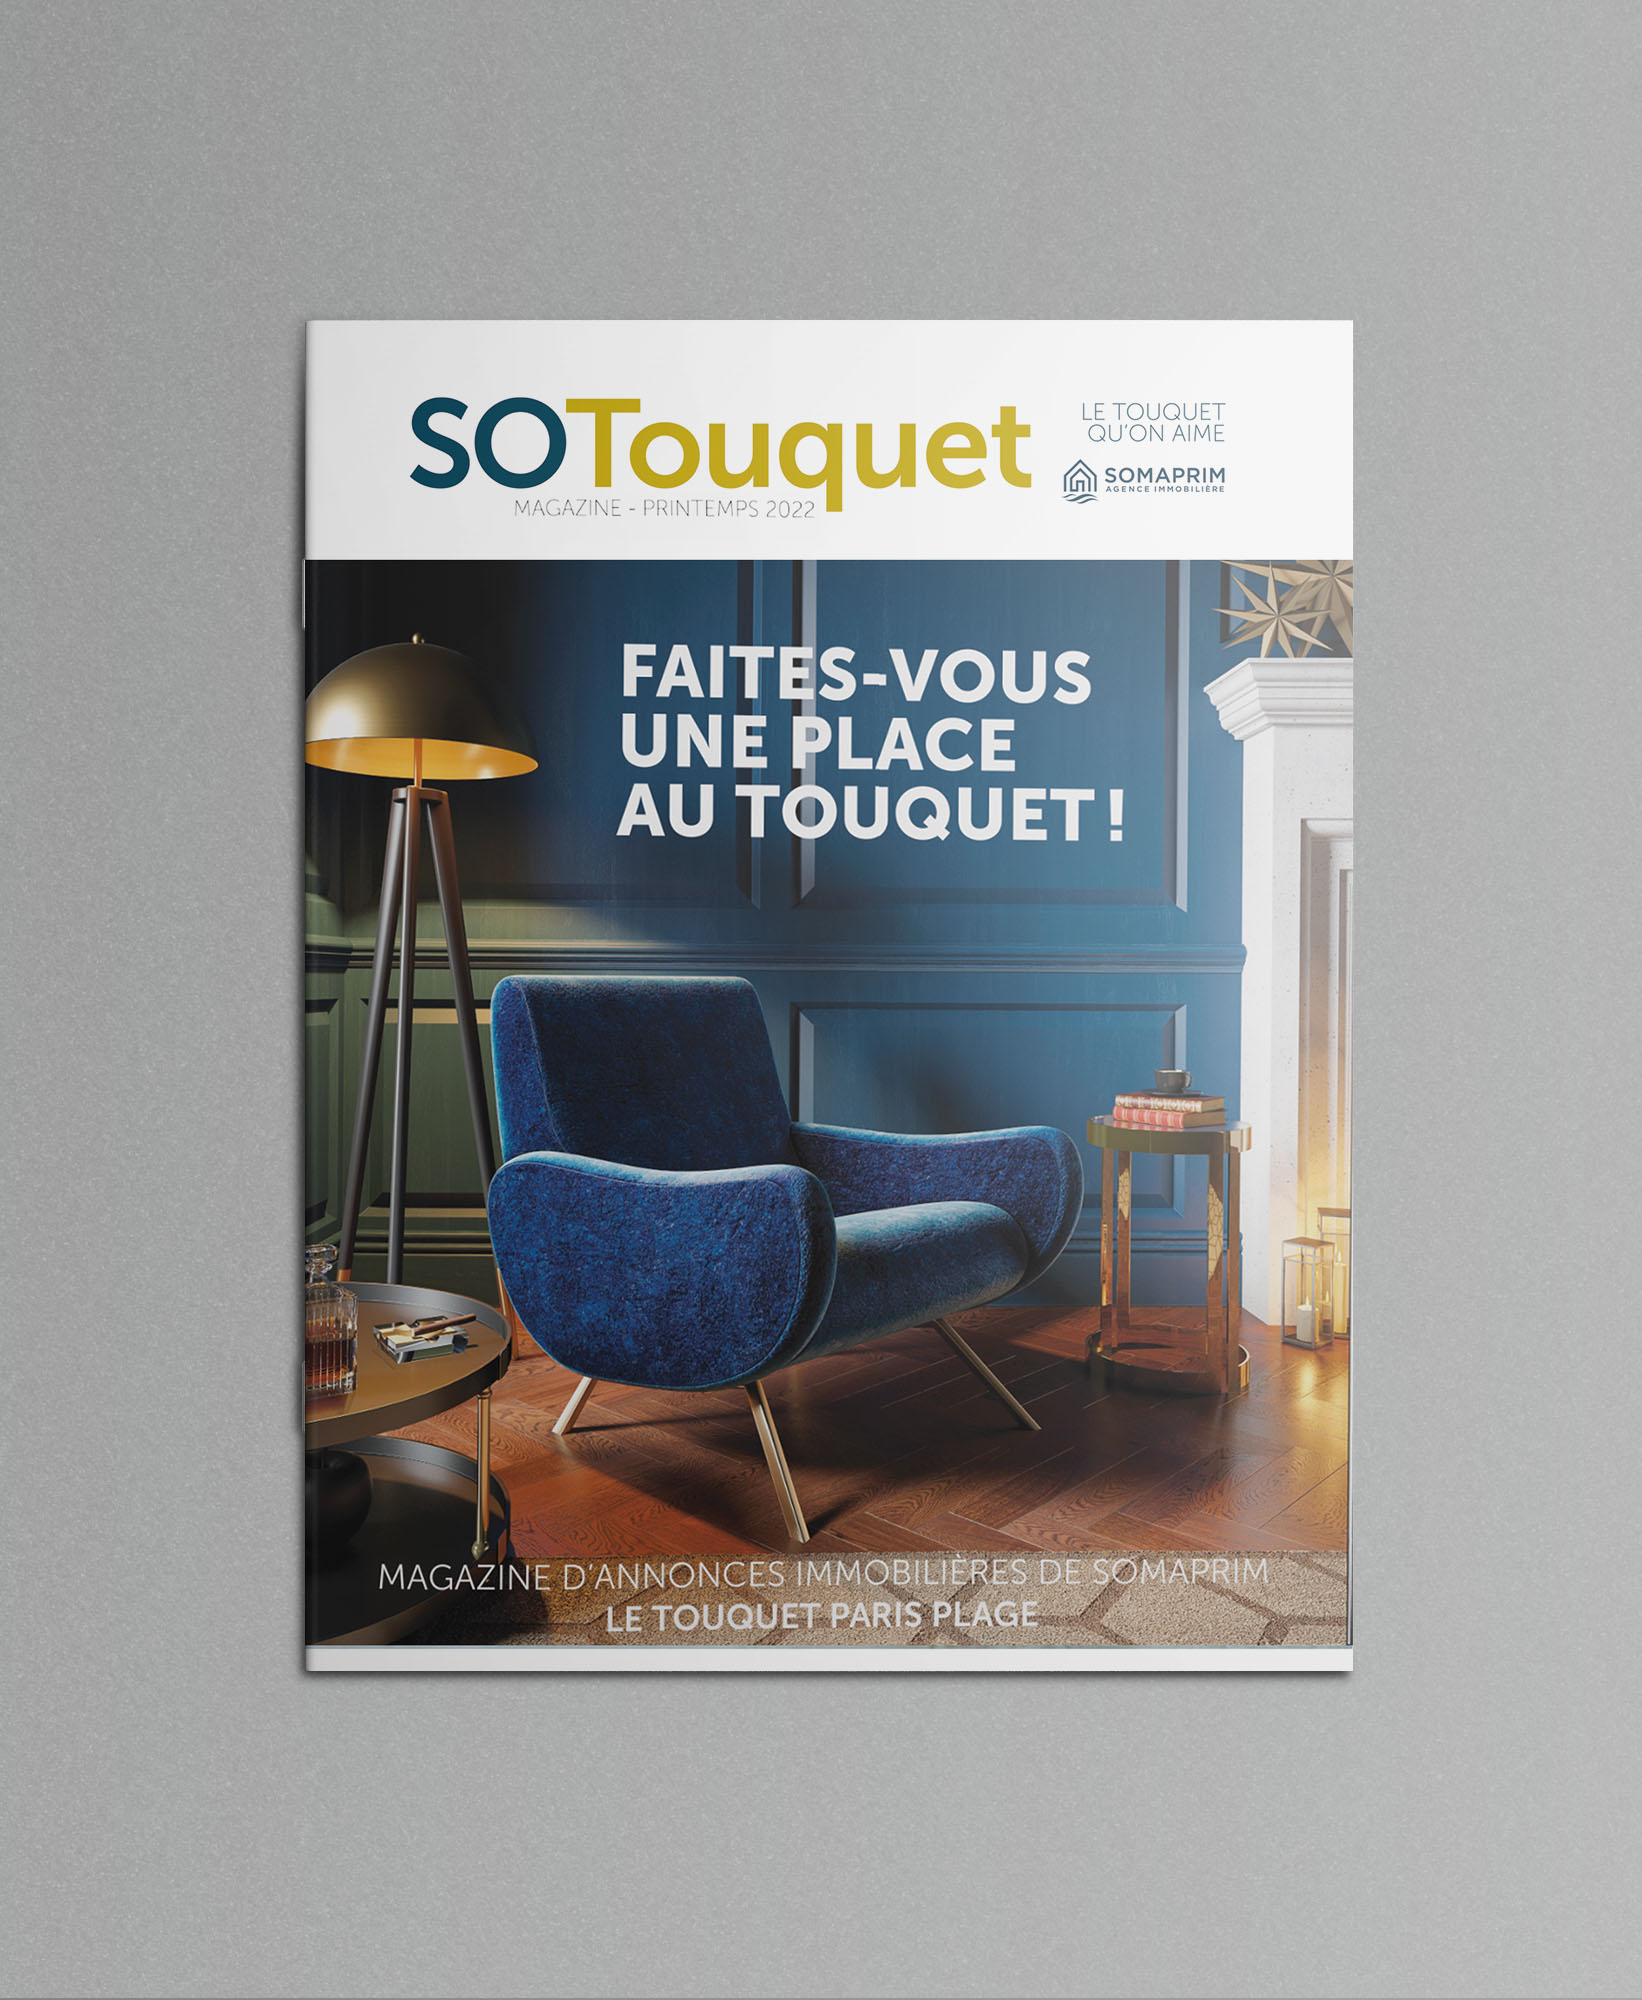 couv Sotouquet somaprim immobilier le Touquet